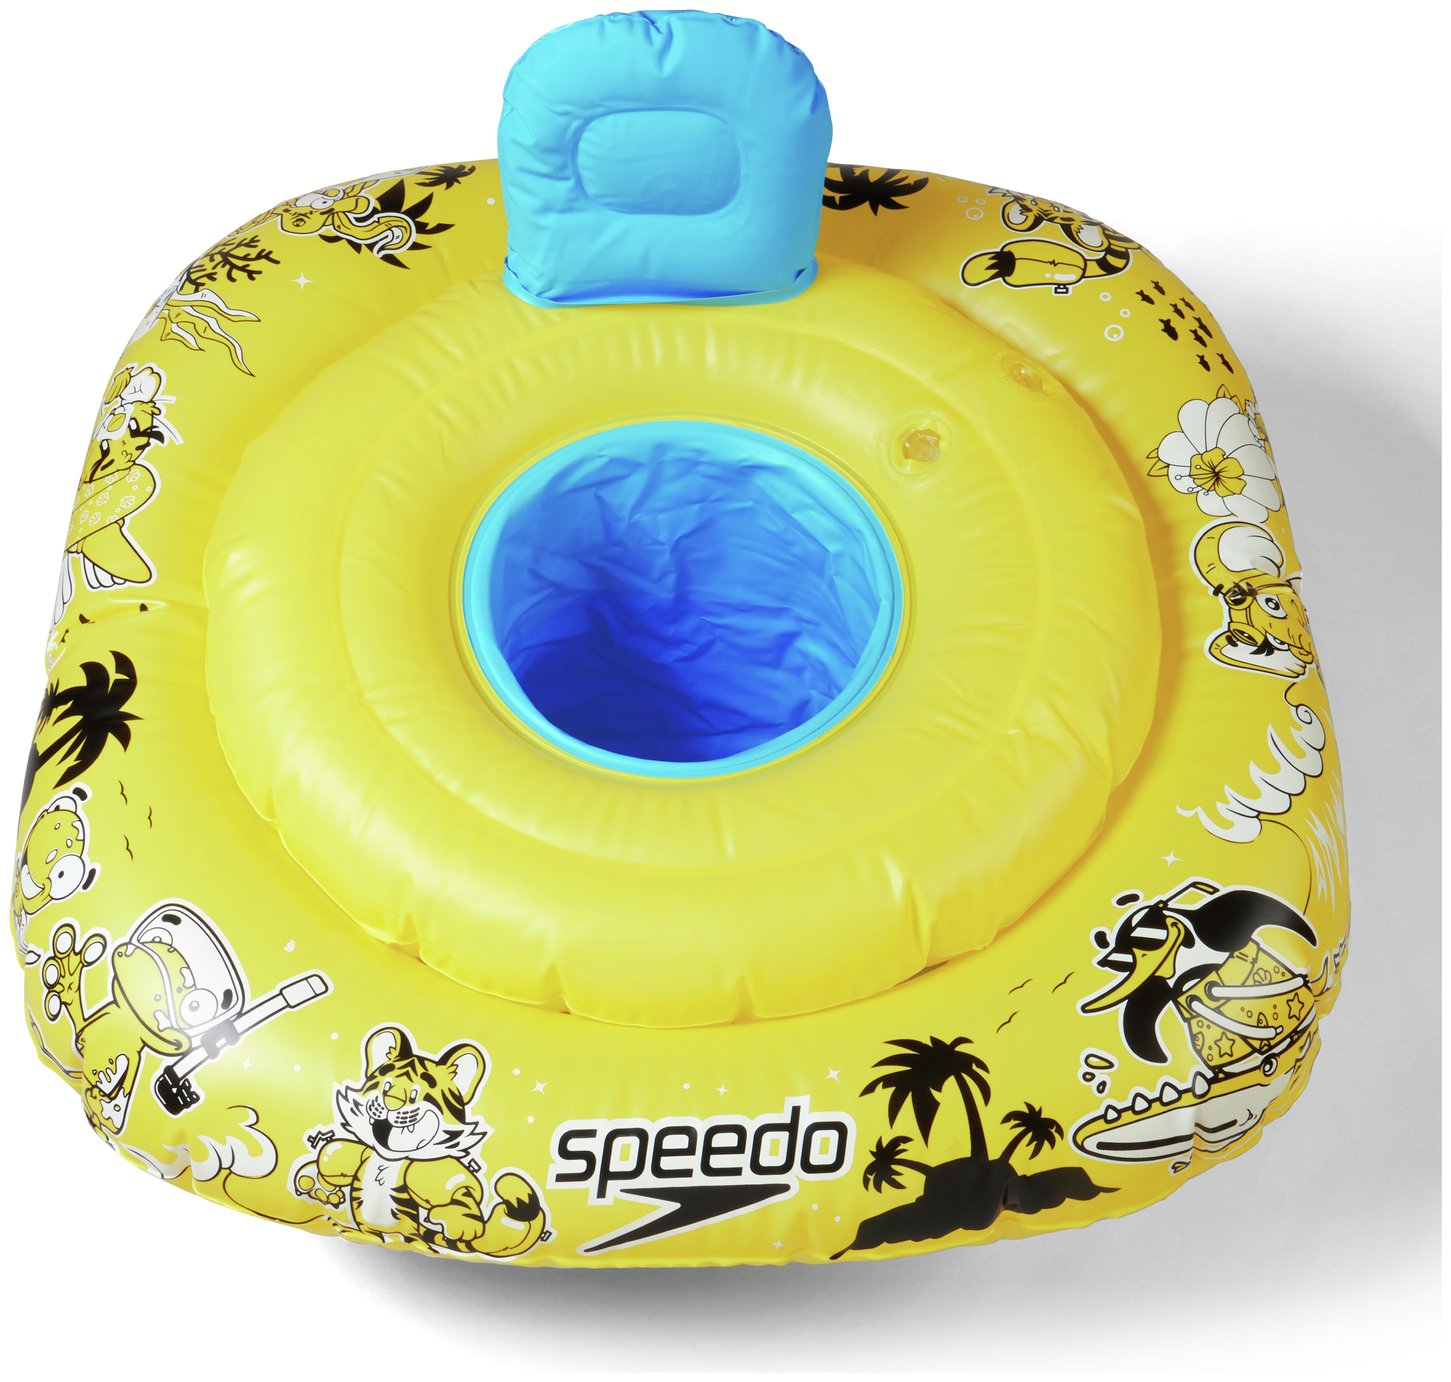 Speedo Character Swim Seat - Yellow